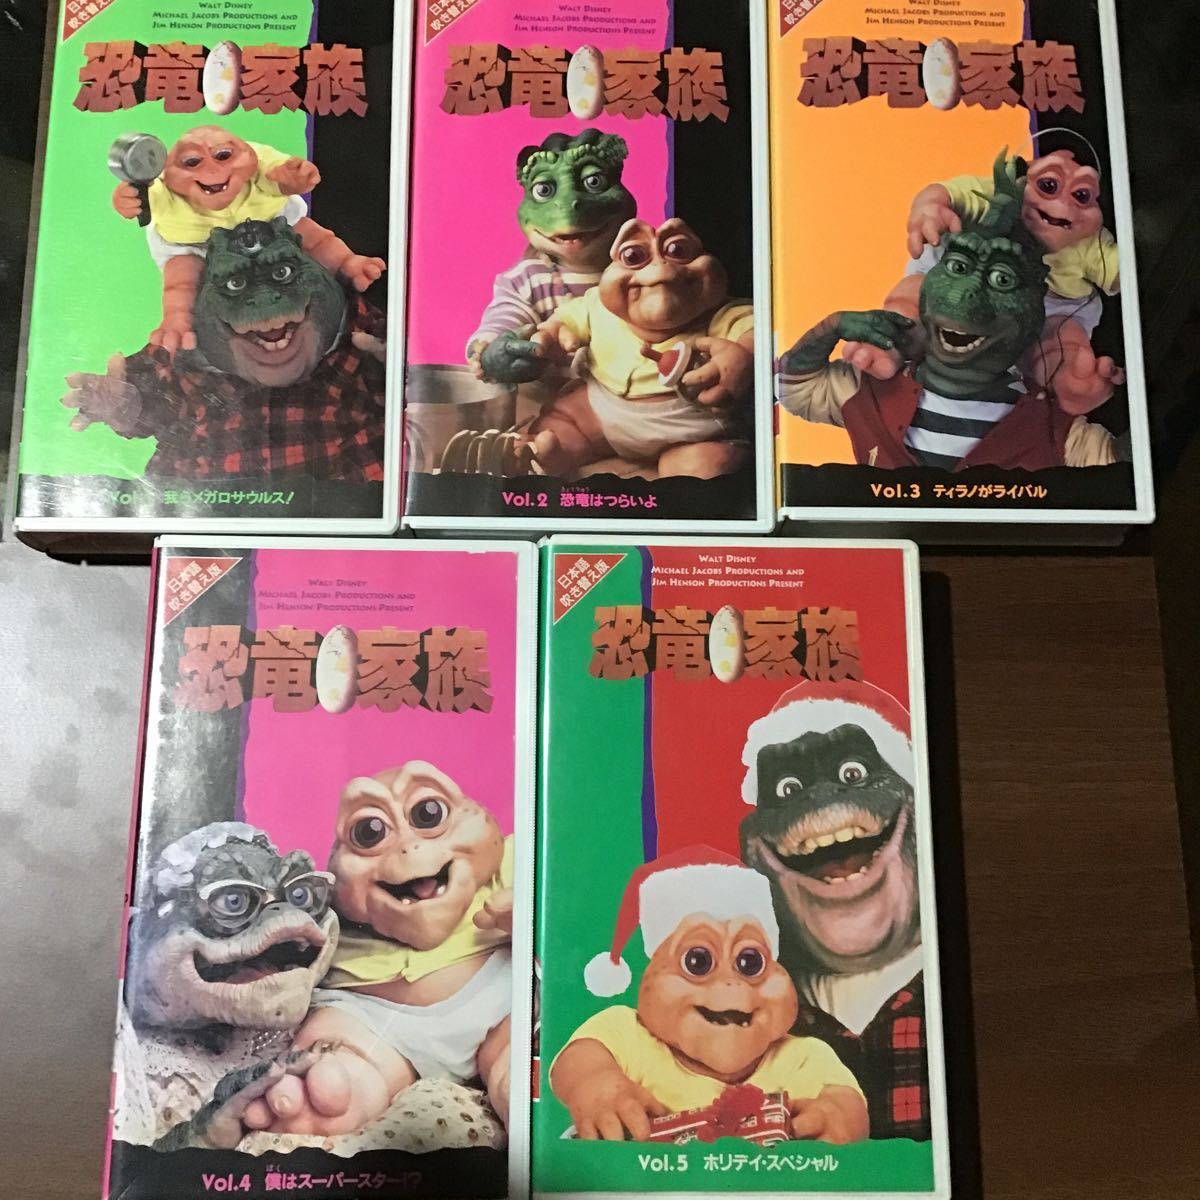 日本製・綿100% ディズニー VHS 恐竜家族 完結セット DVDではご